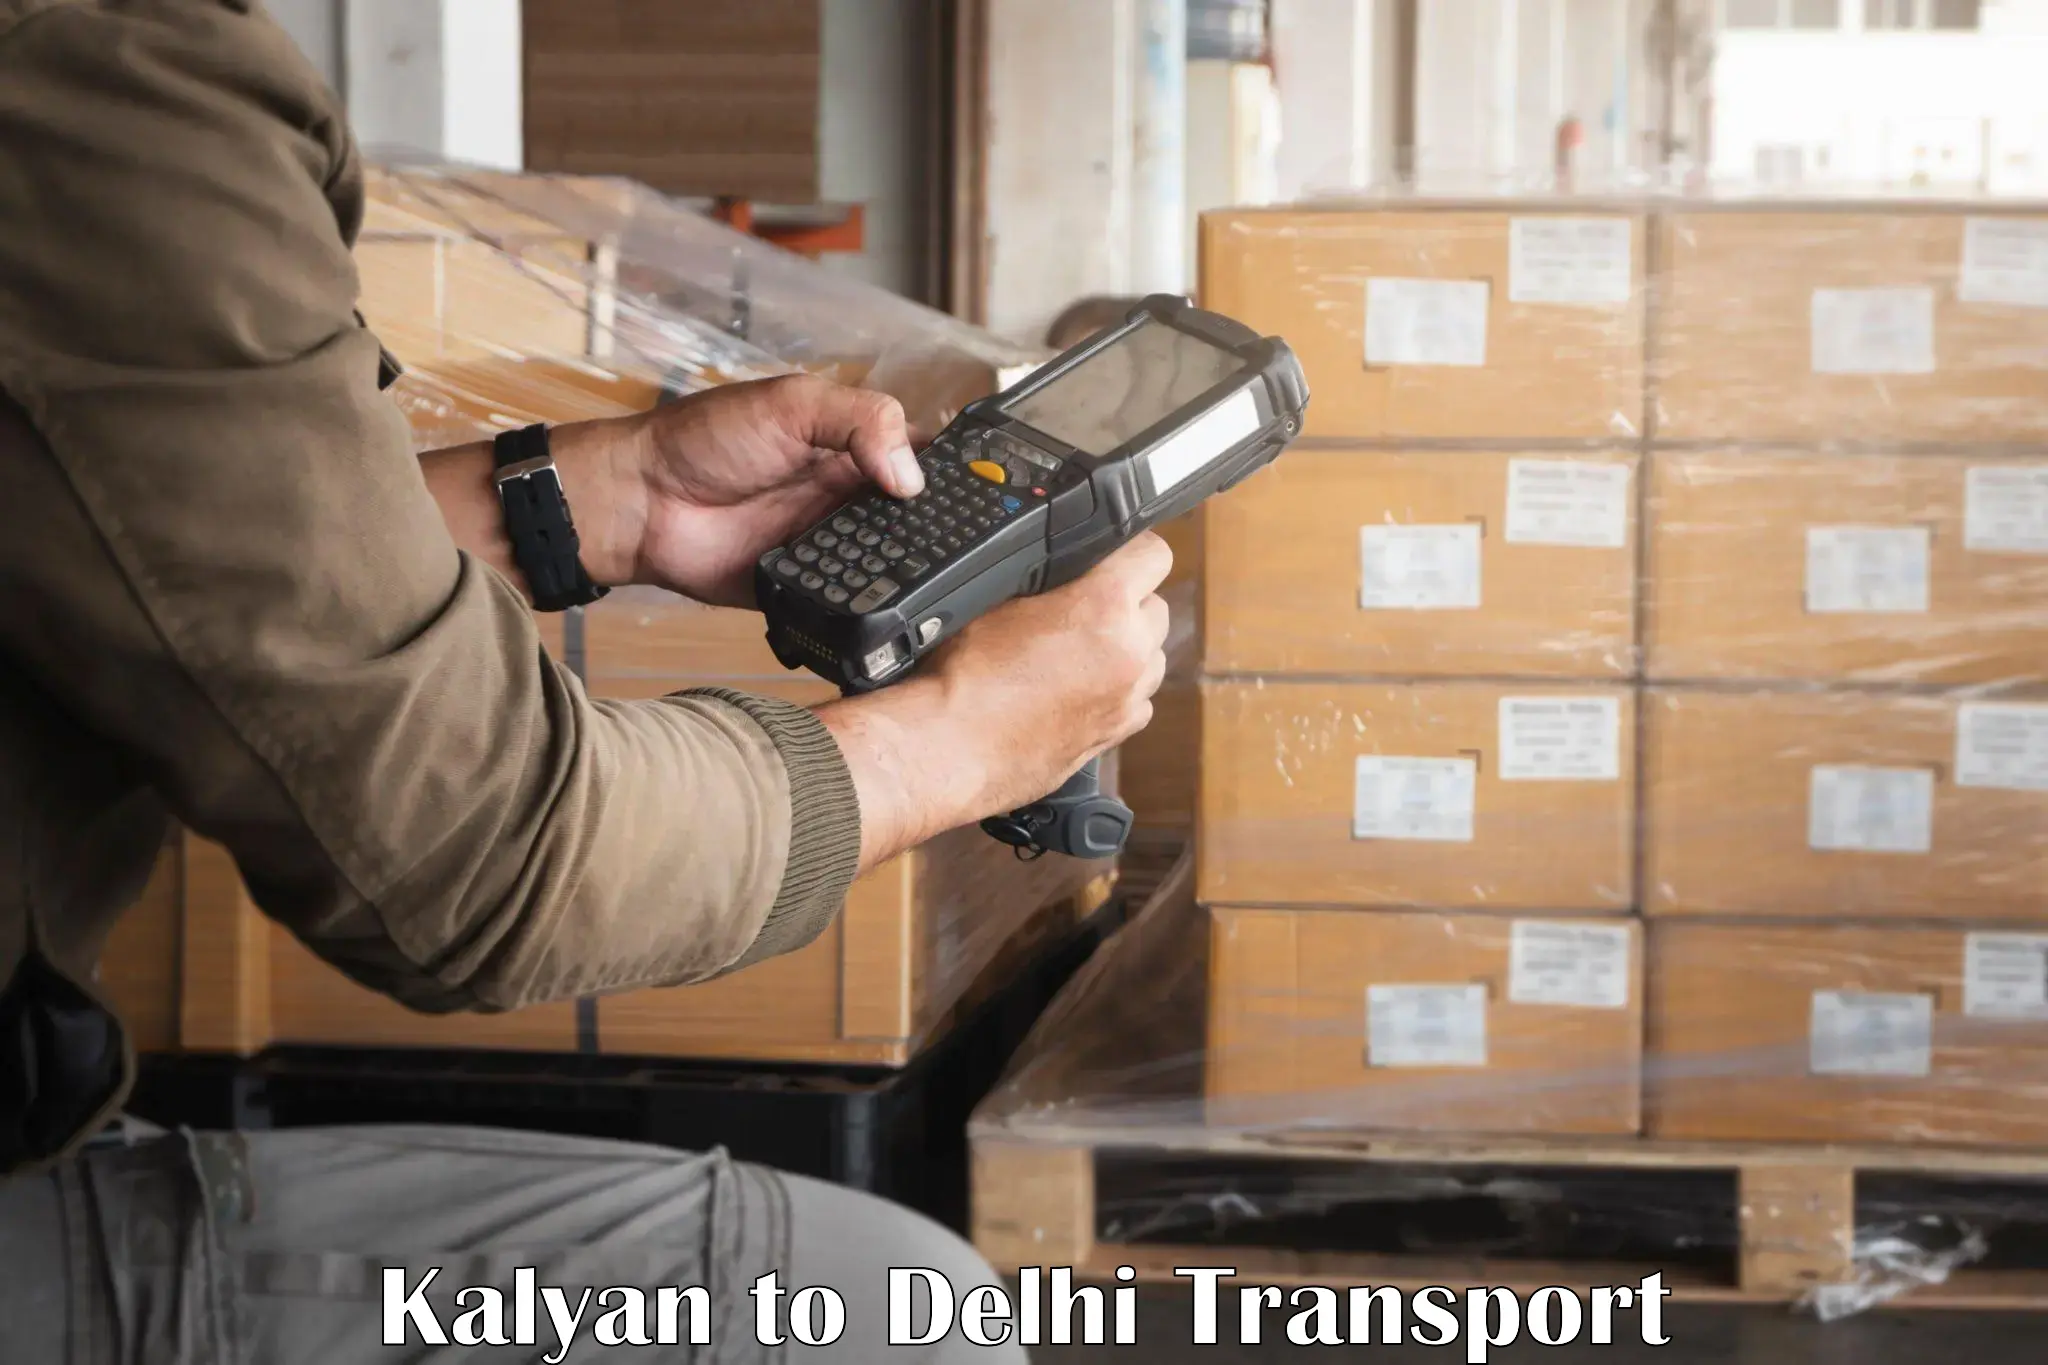 Container transport service Kalyan to IIT Delhi